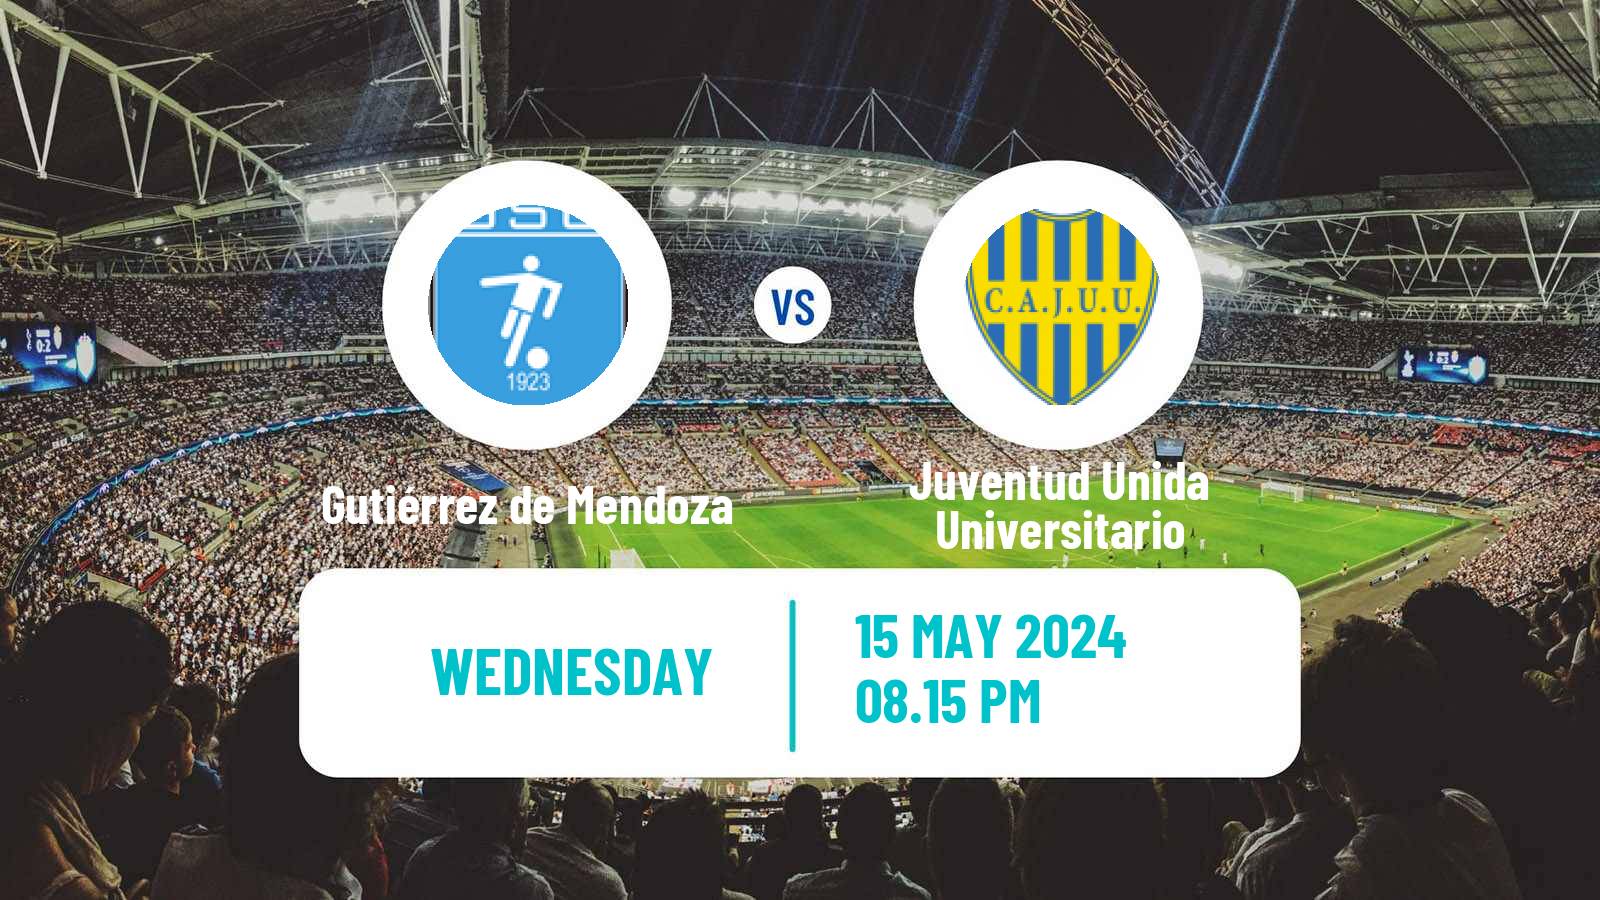 Soccer Argentinian Torneo Federal Gutiérrez de Mendoza - Juventud Unida Universitario